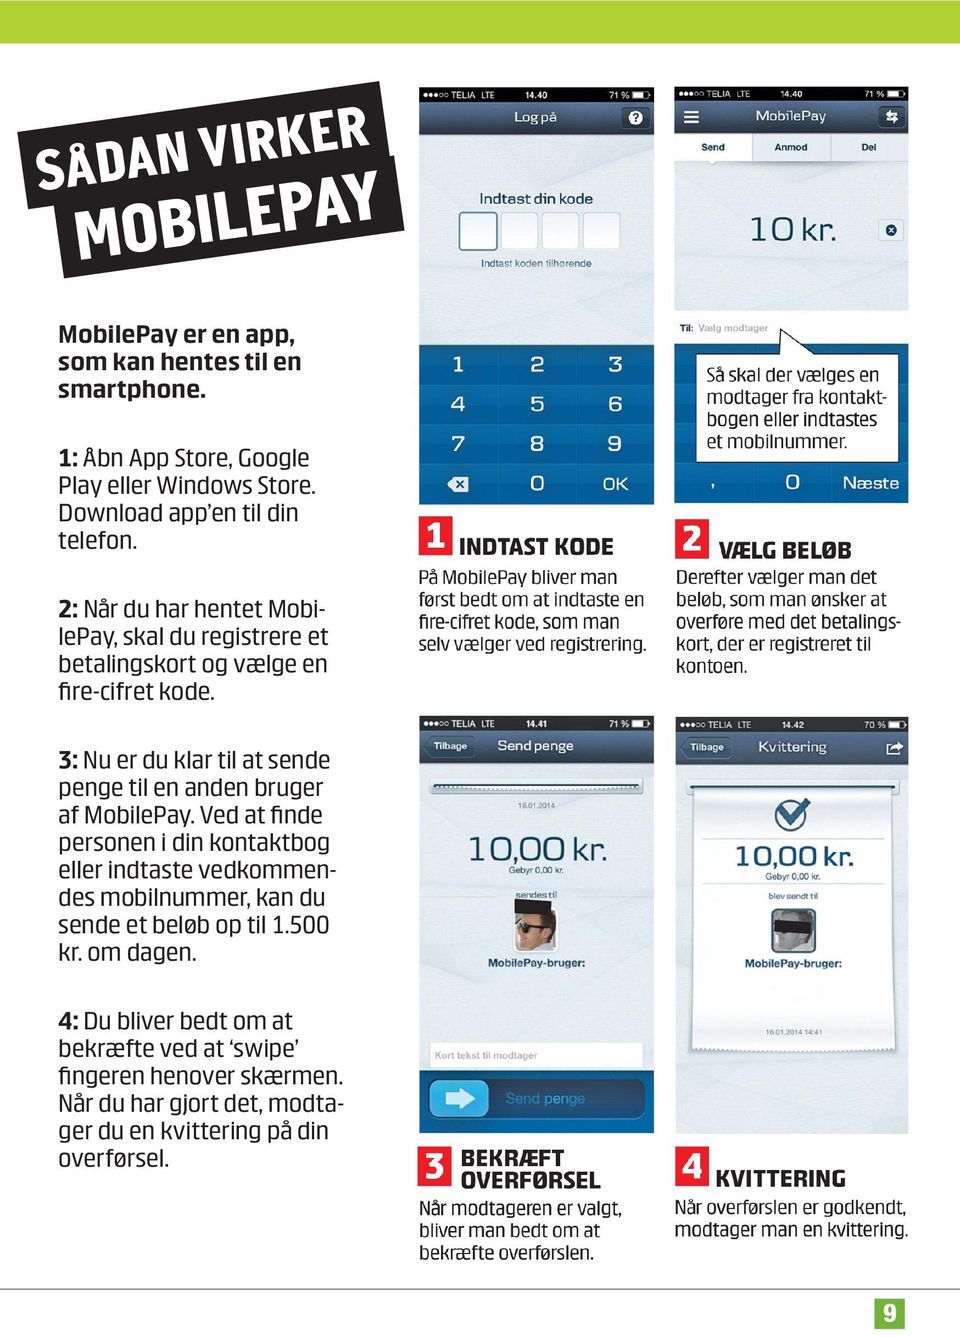 3: Nu er du klar til at sende penge til en anden bruger af MobilePay.